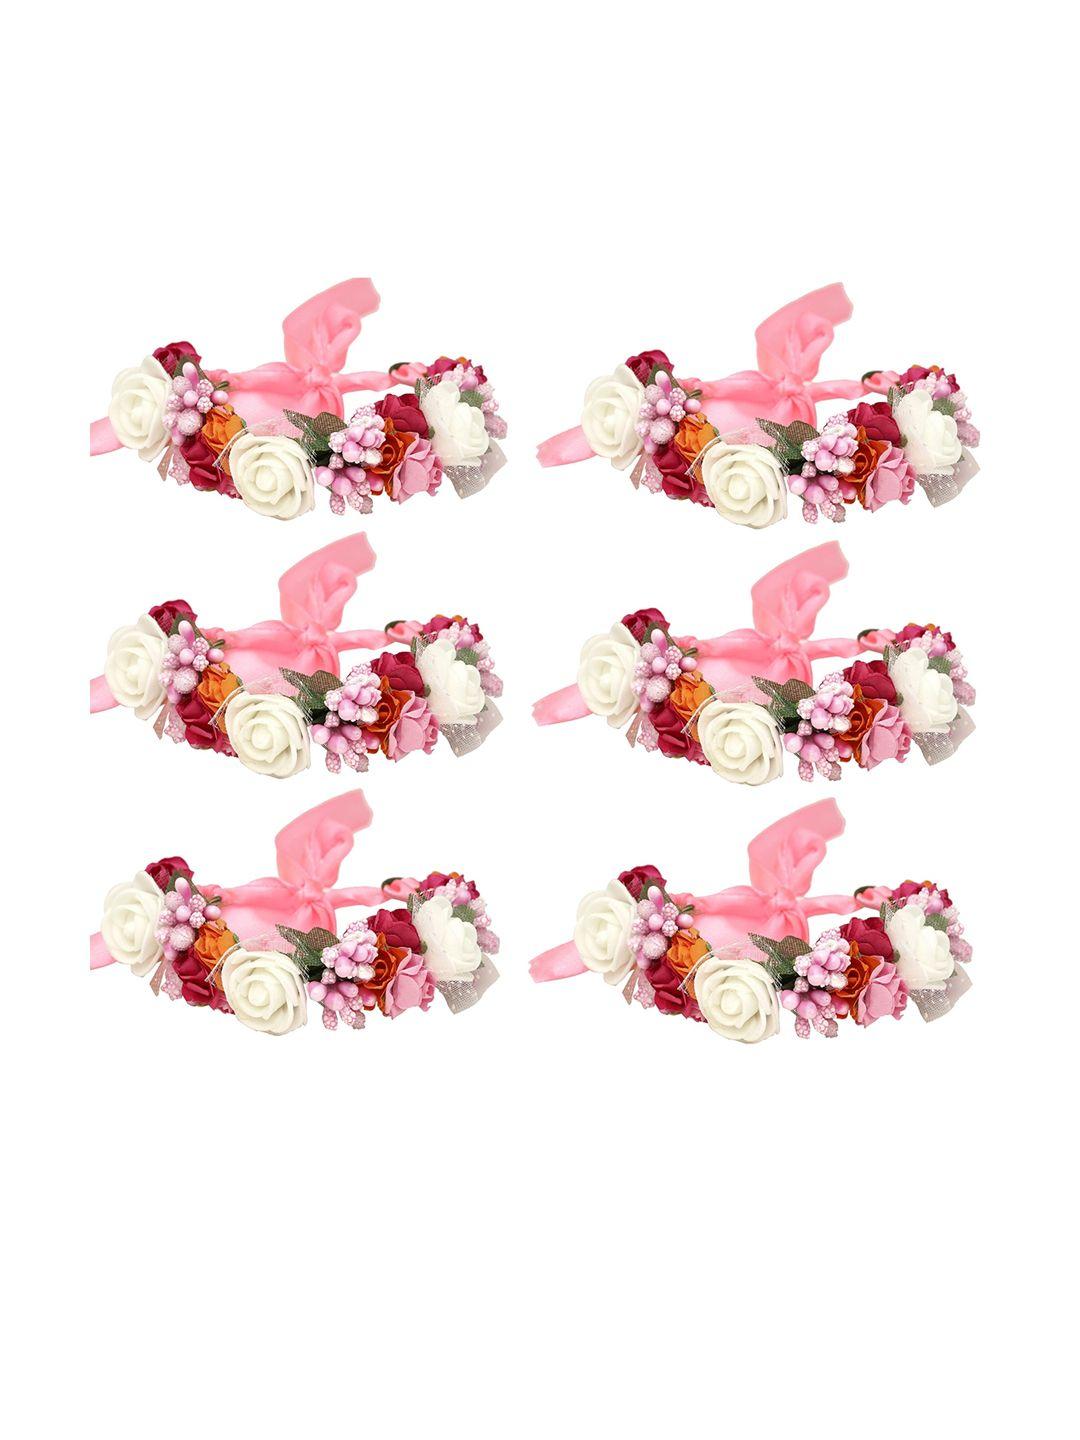 sanjog women 6 pink & white embellished fabric handmade floral rakhi bracelet